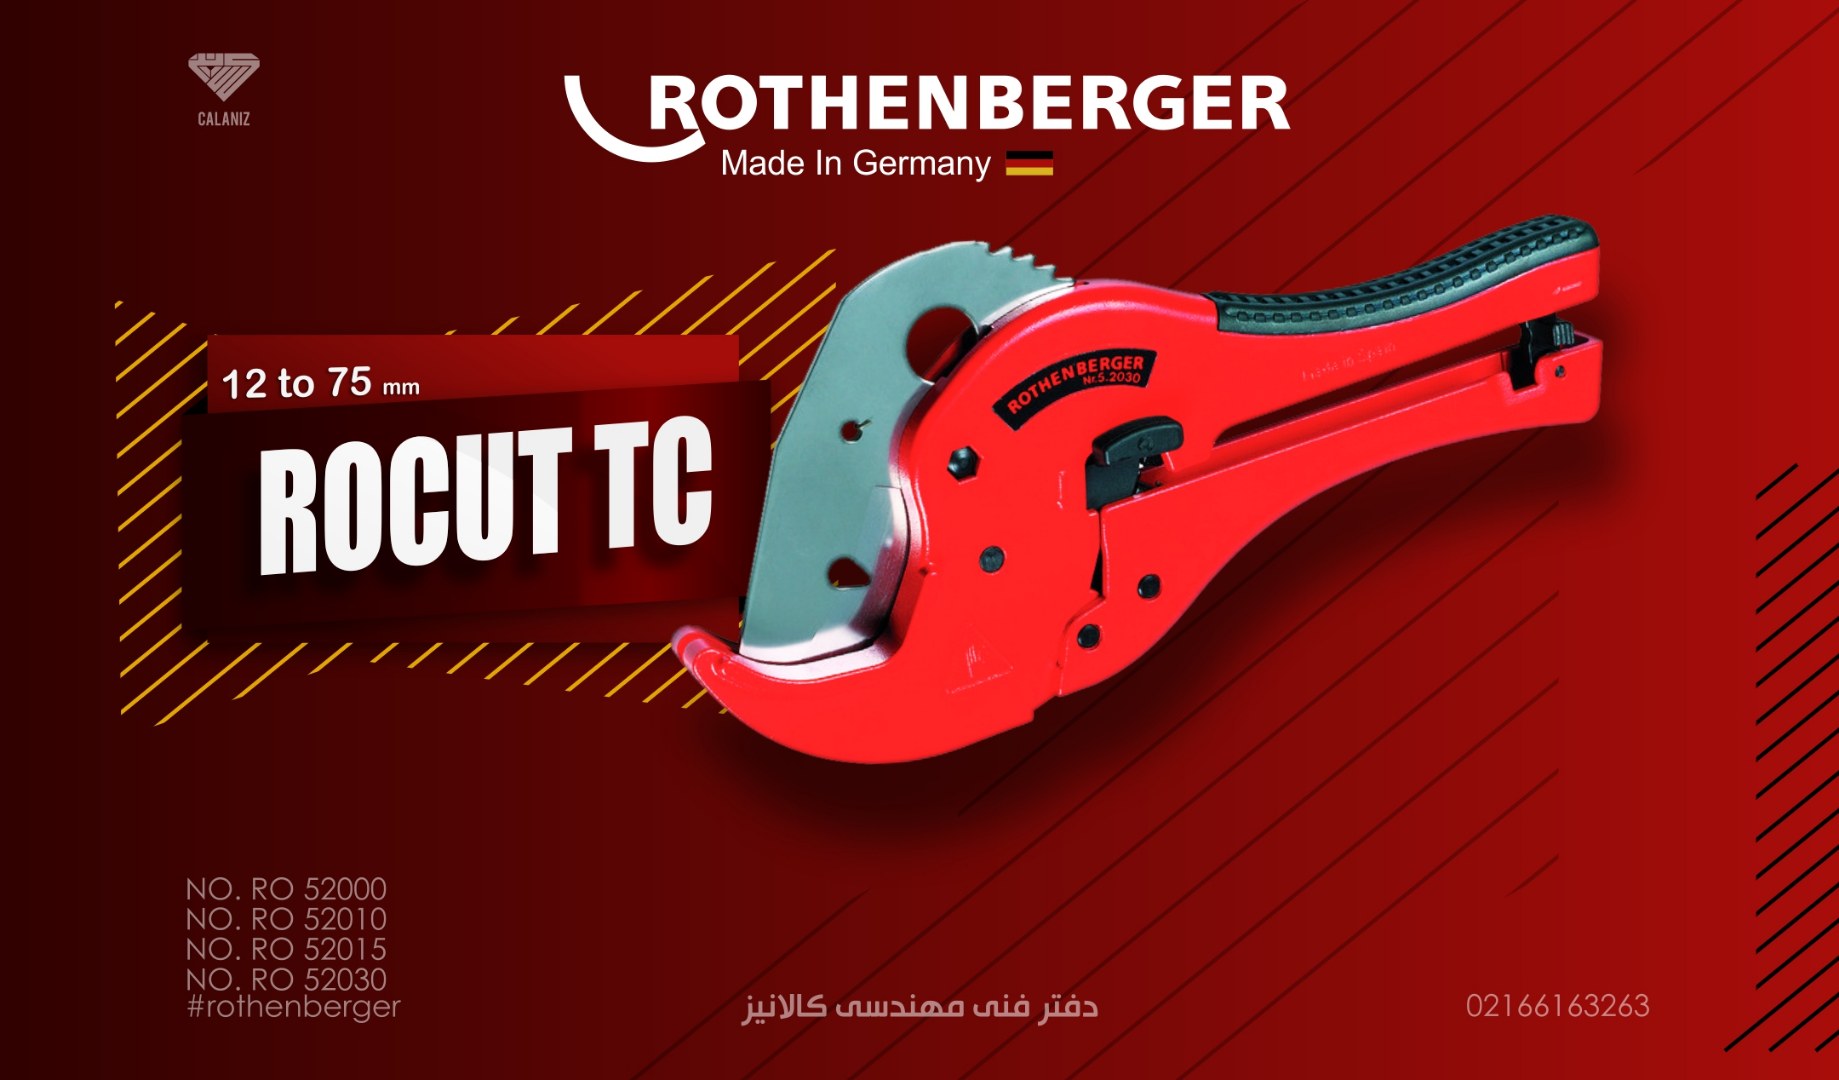 قیچی لوله بر روتنبرگر آلمان –  مدل ROCUT TC